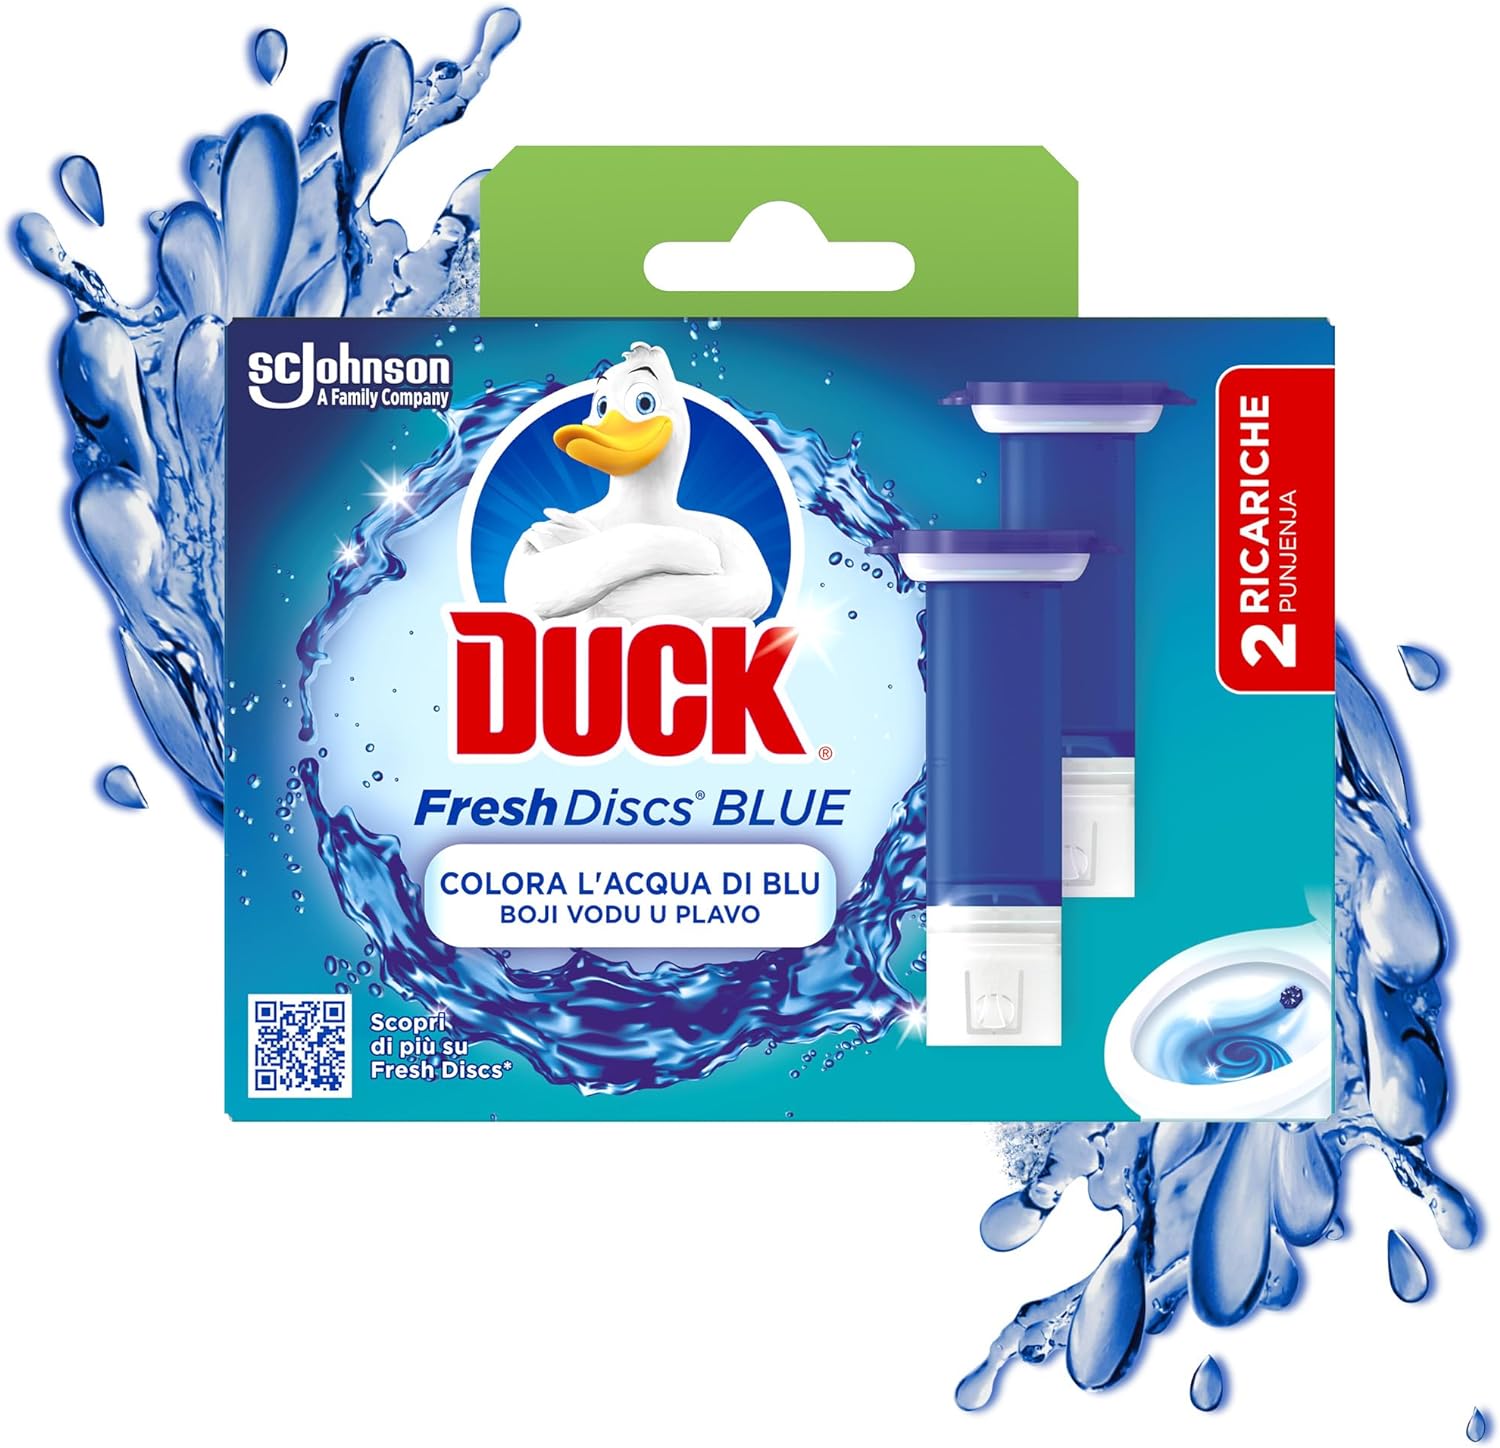 Duck Fresh Discs Blue 2 Ricariche da 6 Dischi Gel Igienizzanti WC per Bagno.